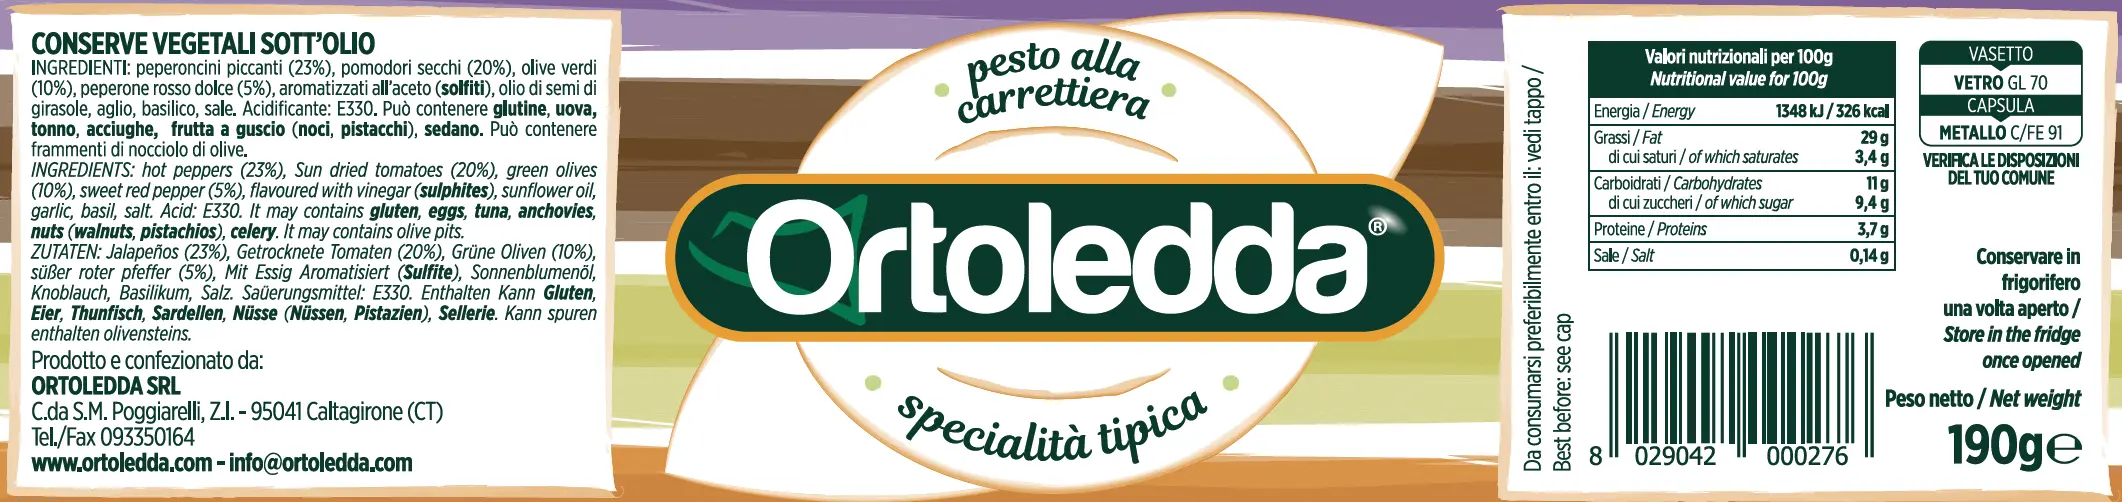 Pesto Alla Carrettiera Ortoledda Agrisicilia